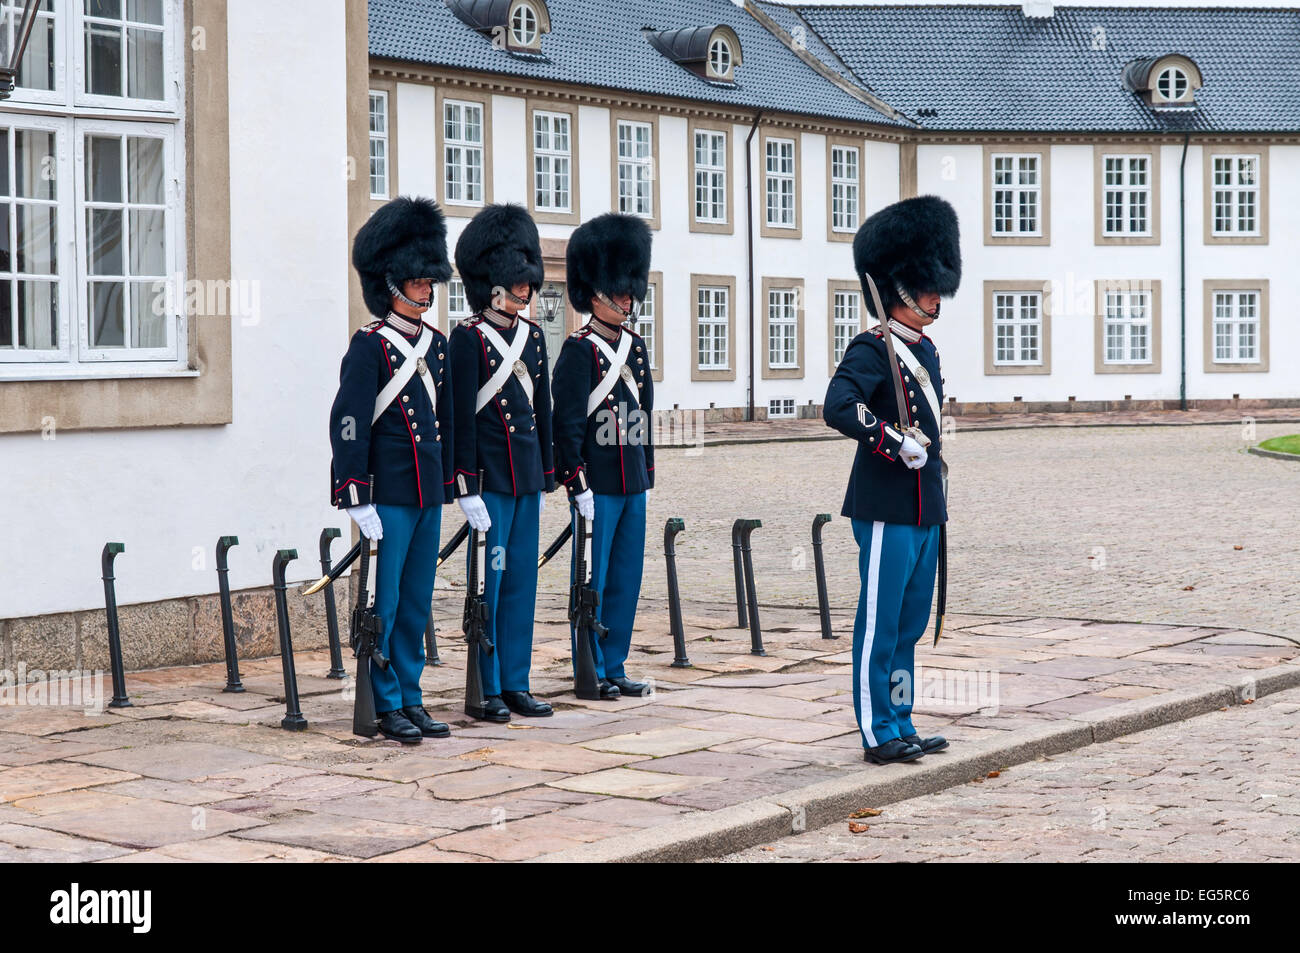 Changement de la garde royale du palais de Fredensborg sur Août 6, 2010 à Fredensborg, au Danemark. Banque D'Images